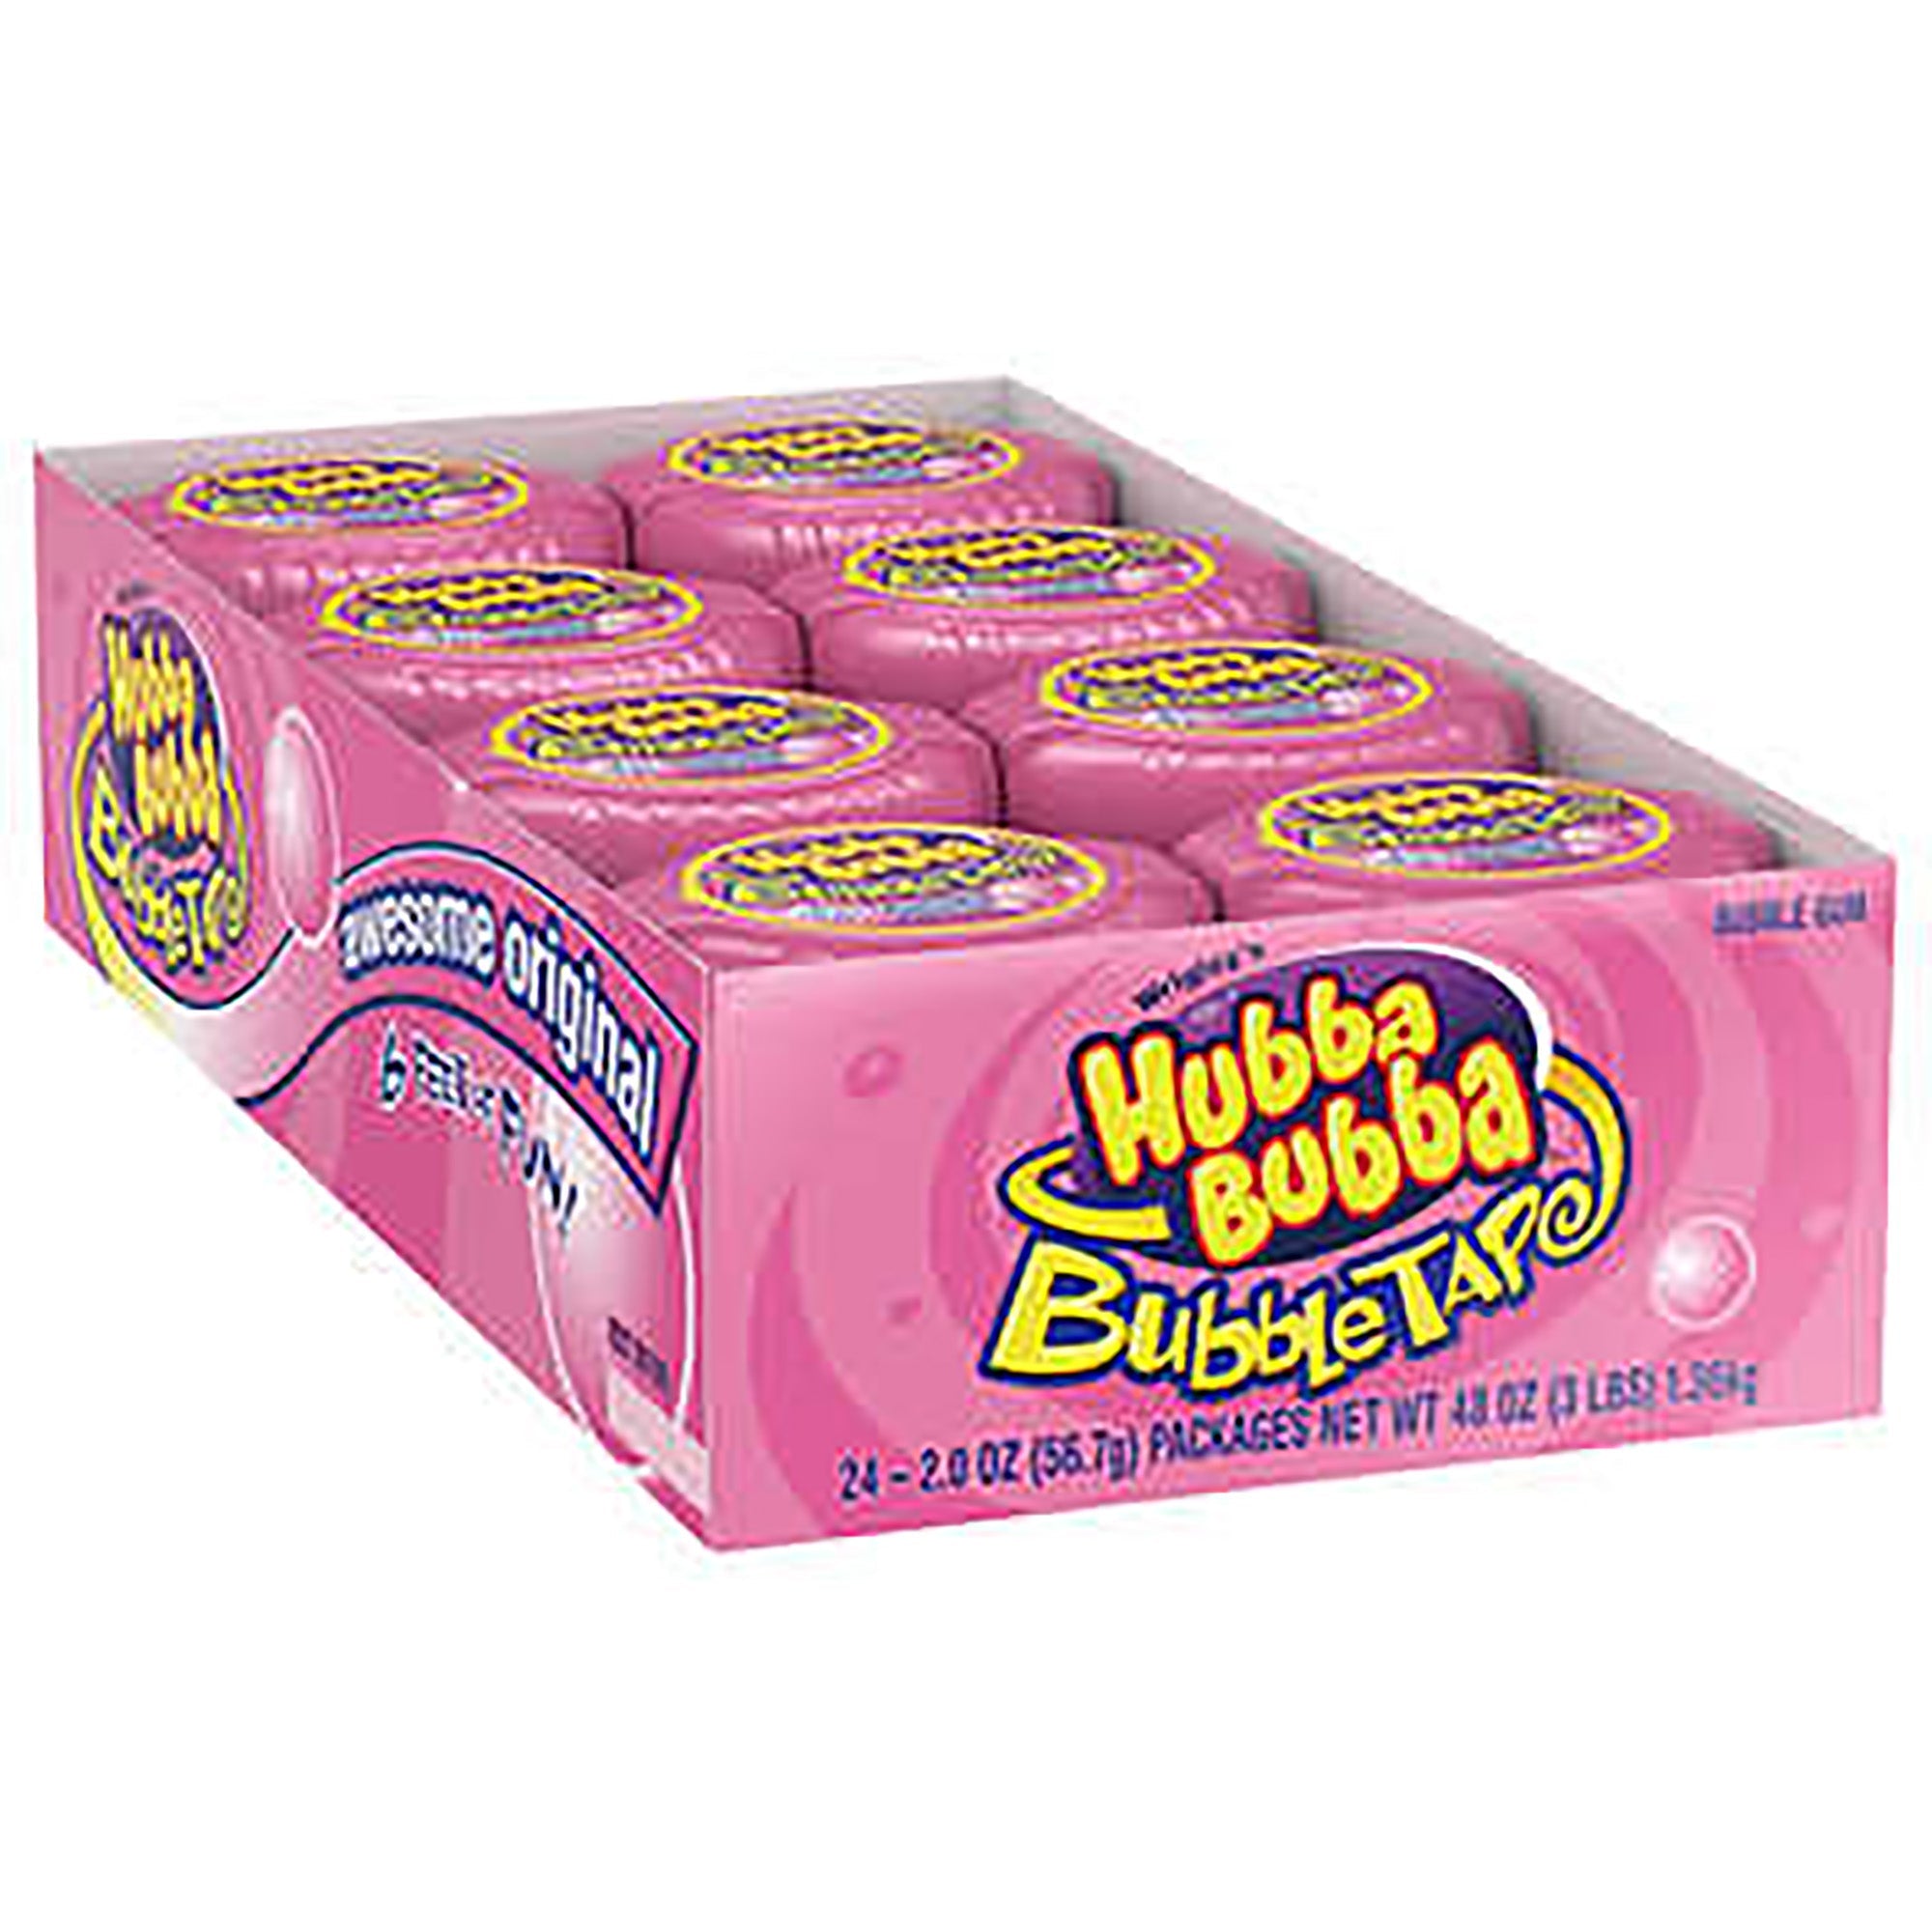 Hubba Bubba Gum Tape - 6ft of Fun 56g